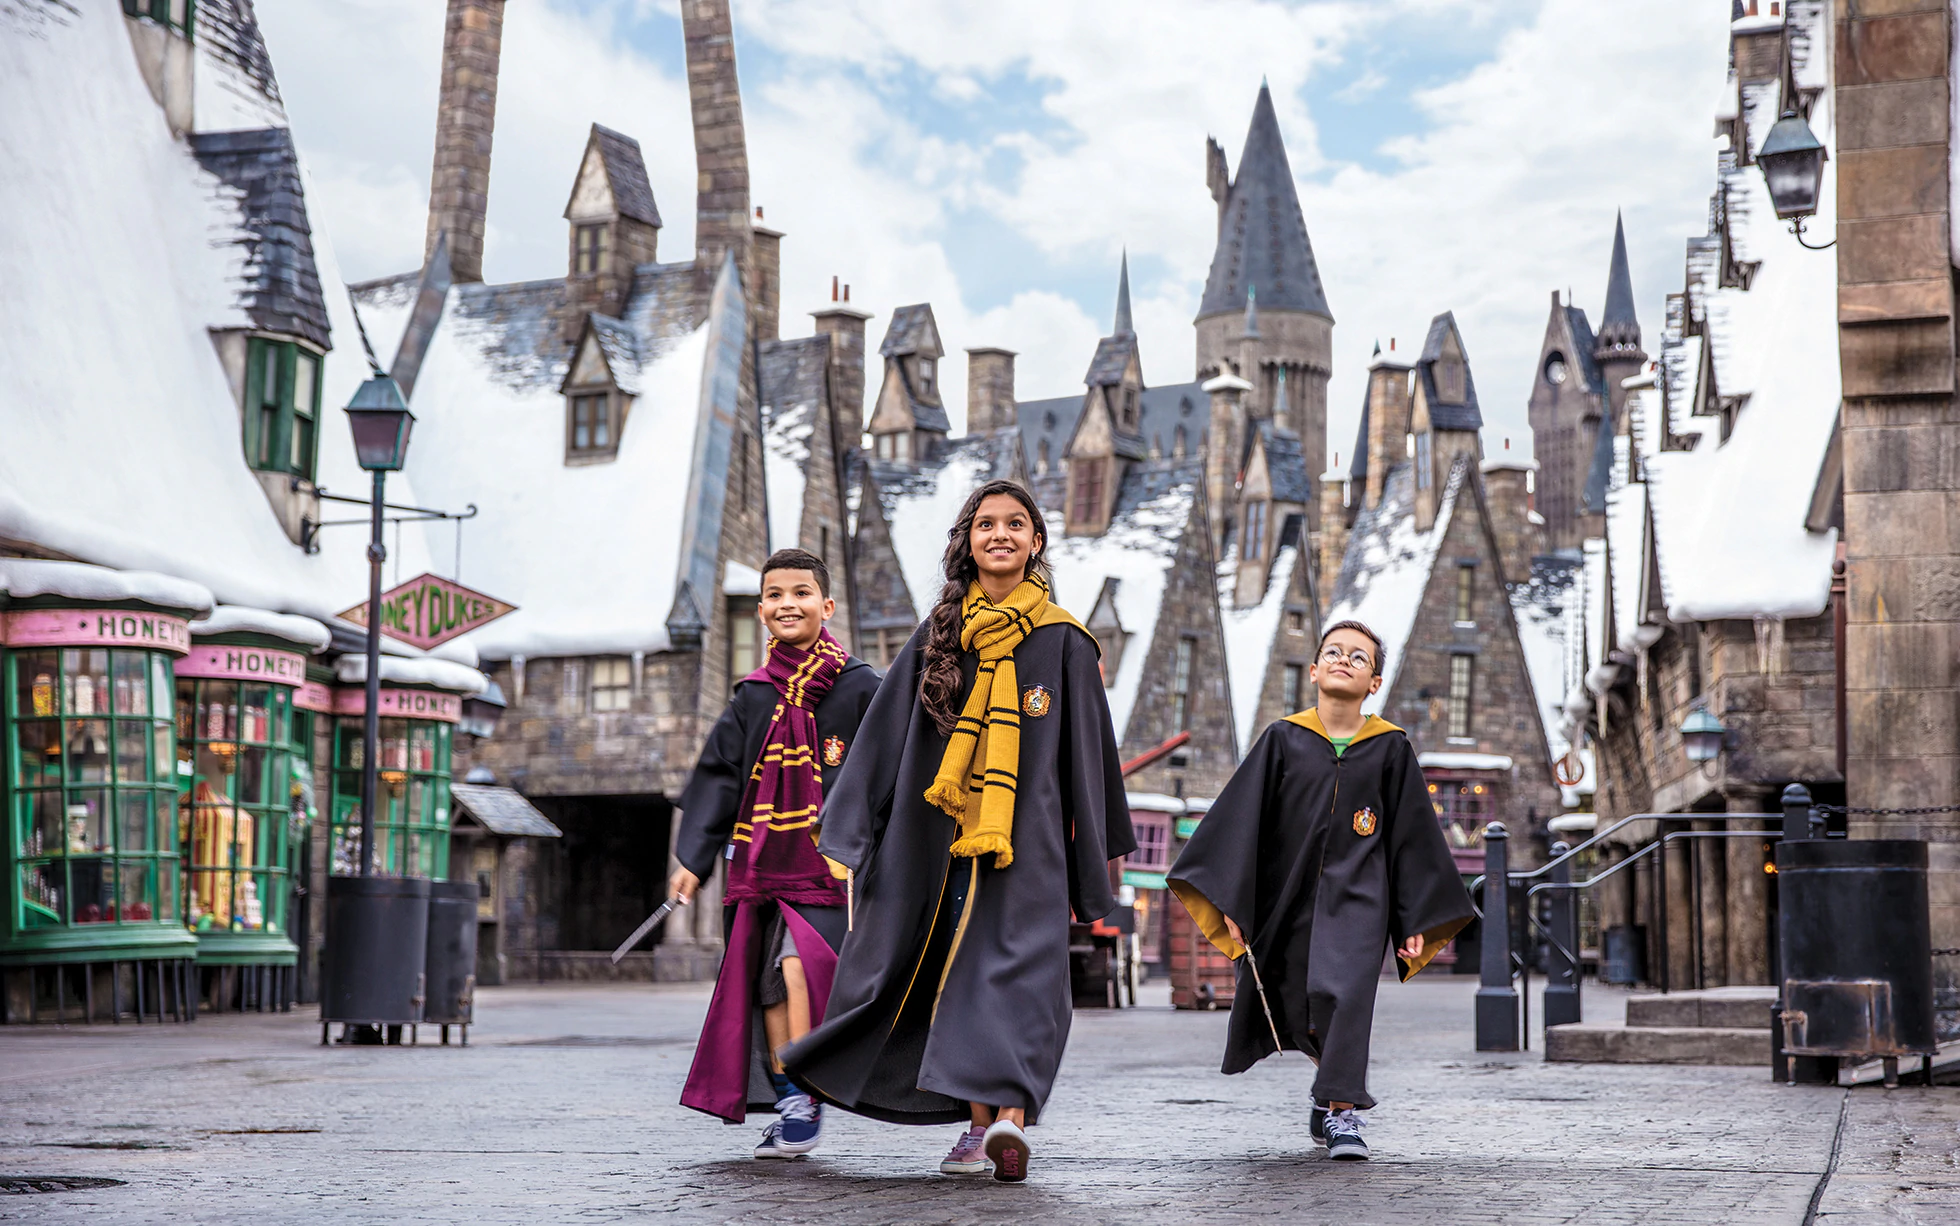 Dünyadaki dördüncü Harry Potter mağazası İstanbul’da açılıyor!